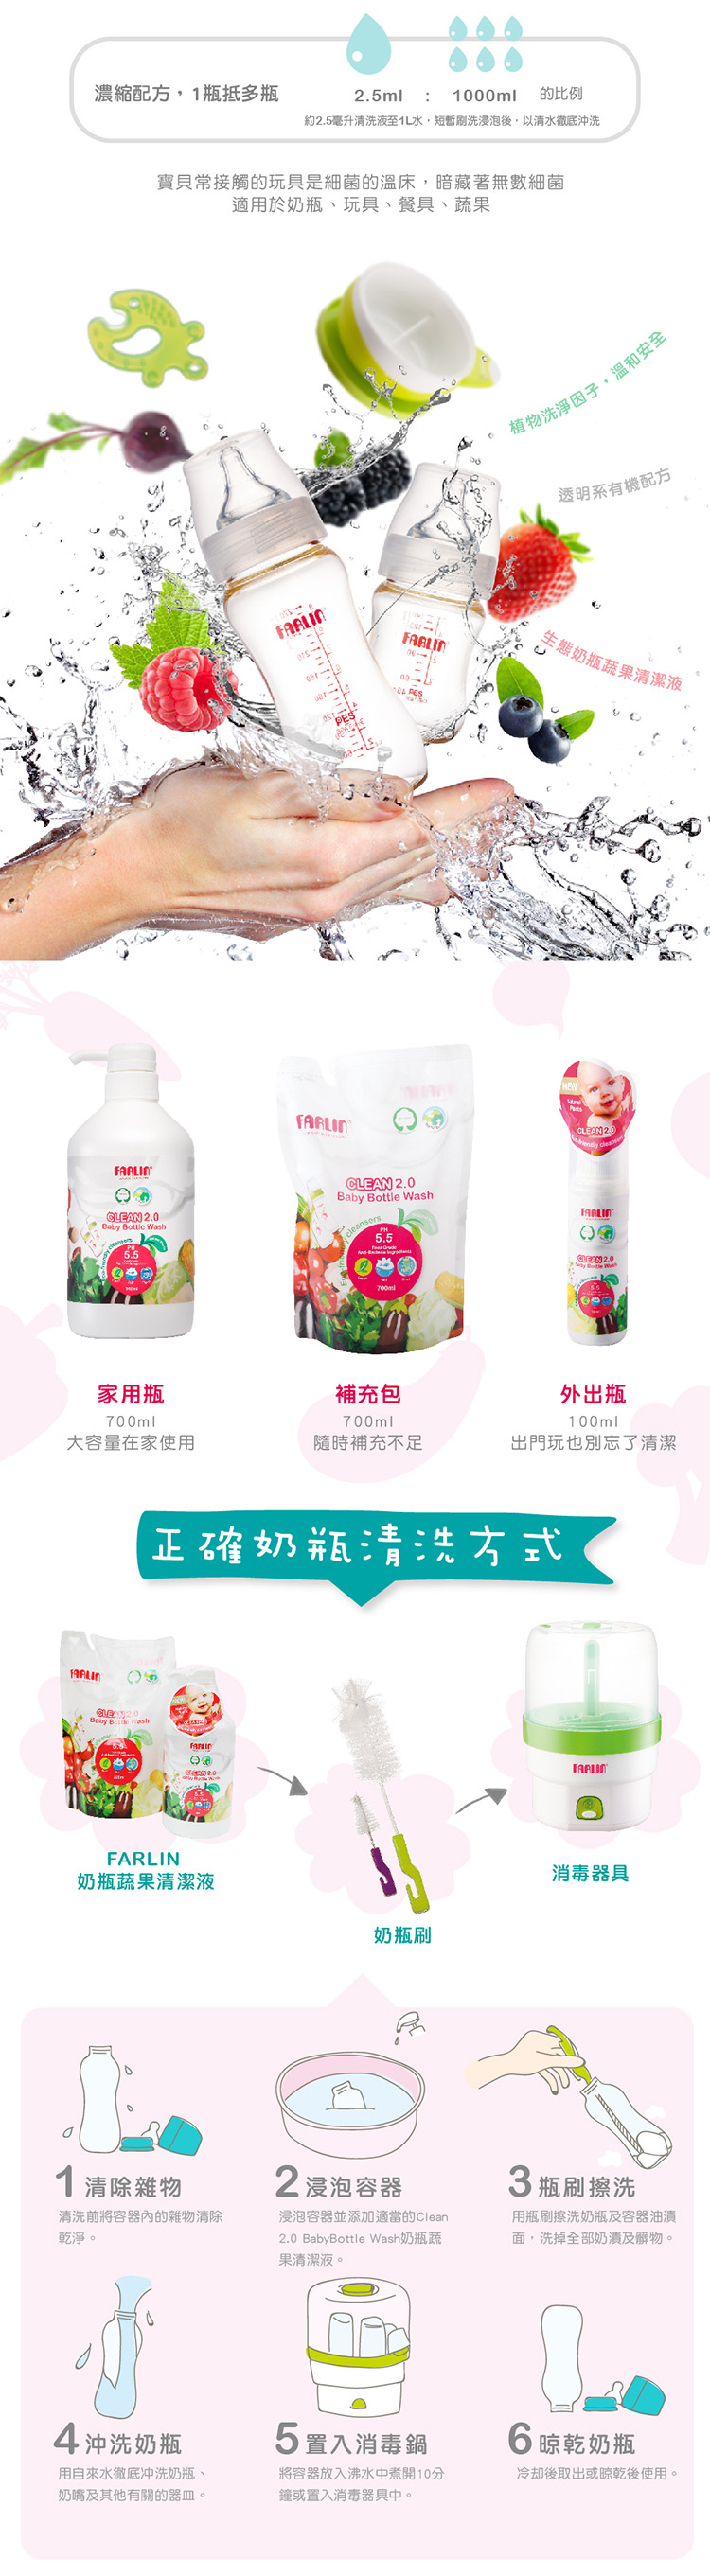 【FARLIN】蔬果玩具奶瓶清潔劑補充包 (12包入箱購)